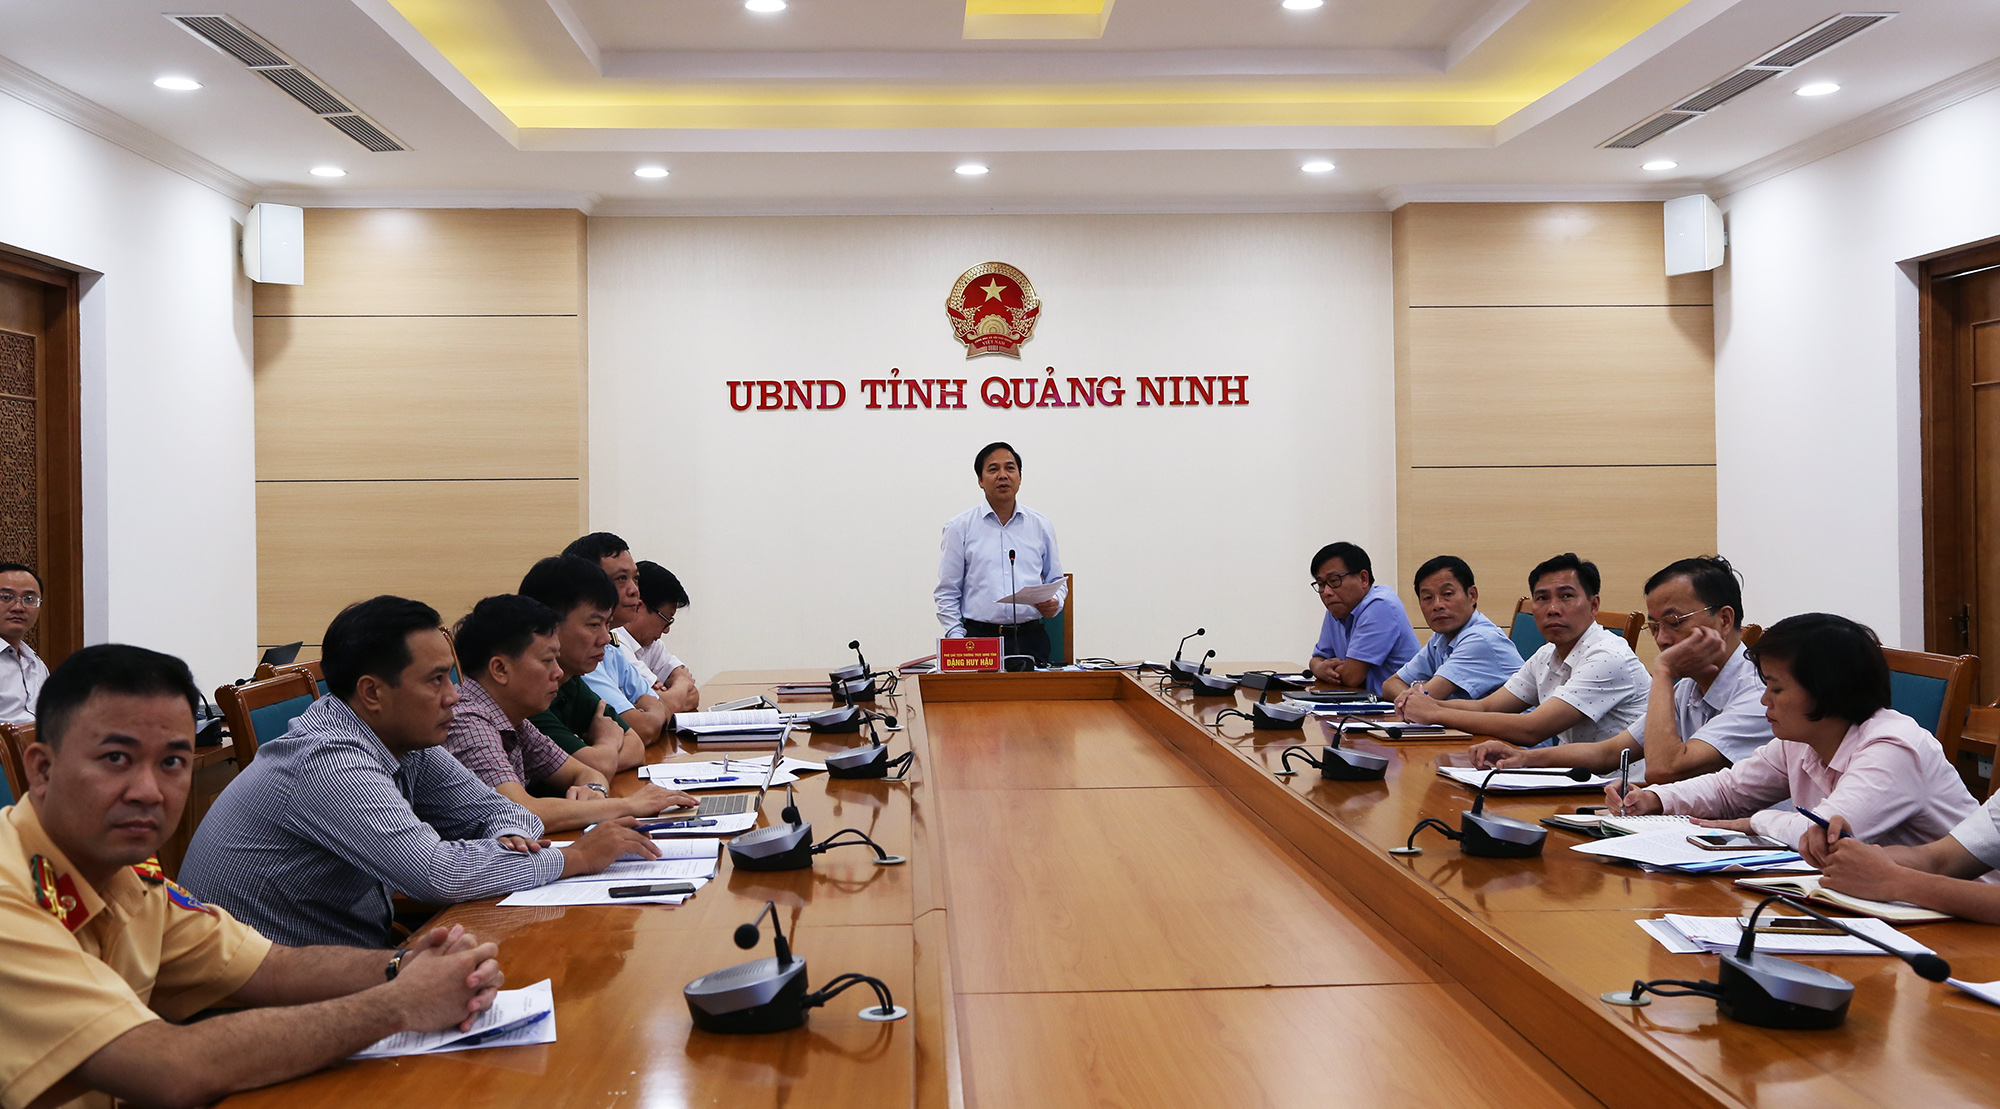 Đồng chí Đặng Huy Hậu, Phó Chủ tịch Thường trực UBND tỉnh phát biểu tại điểm cầu Quảng Ninh.